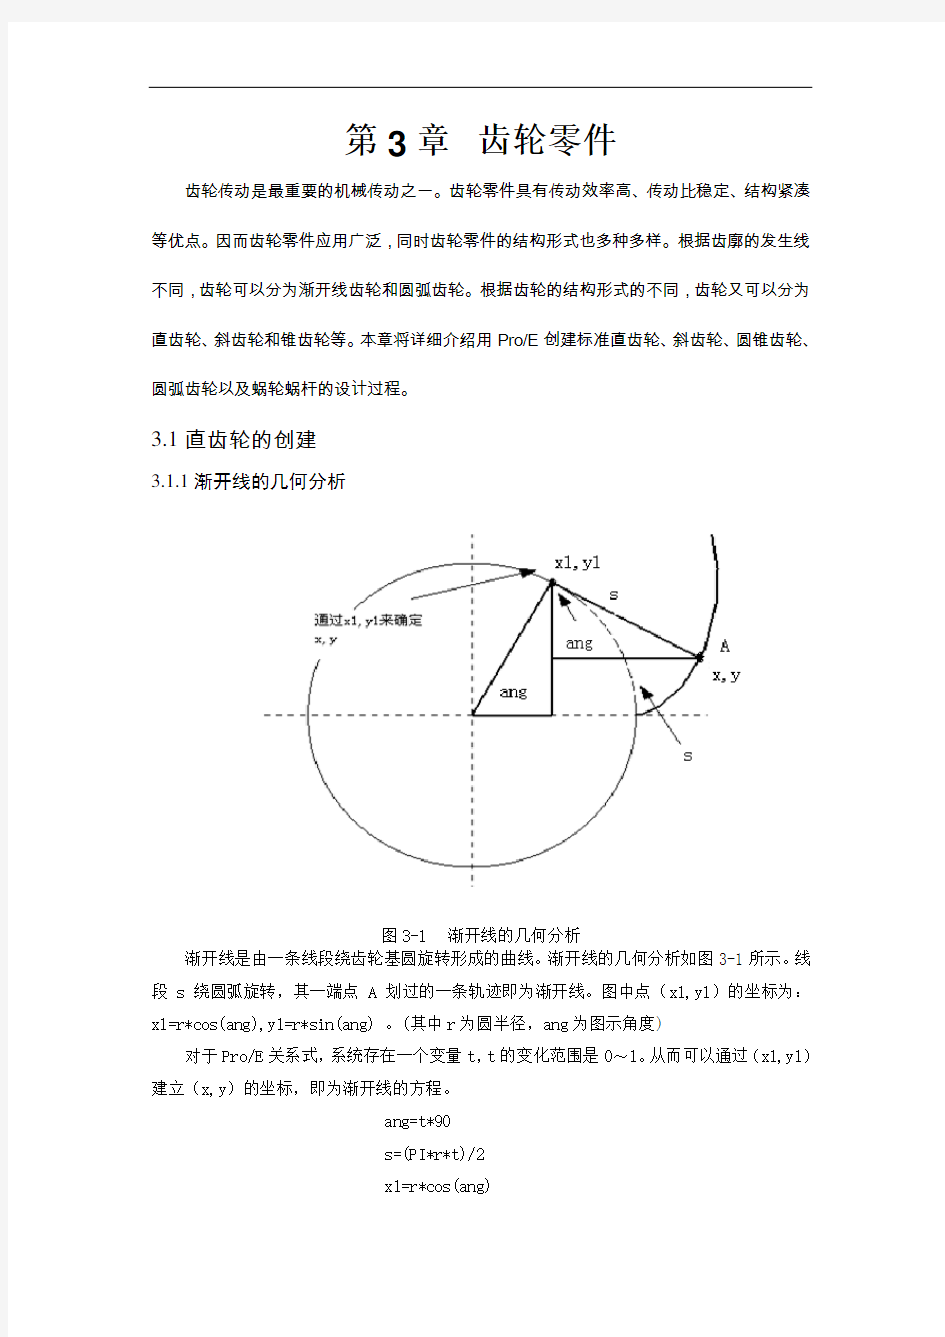 ProE-齿轮画法大全(有图)